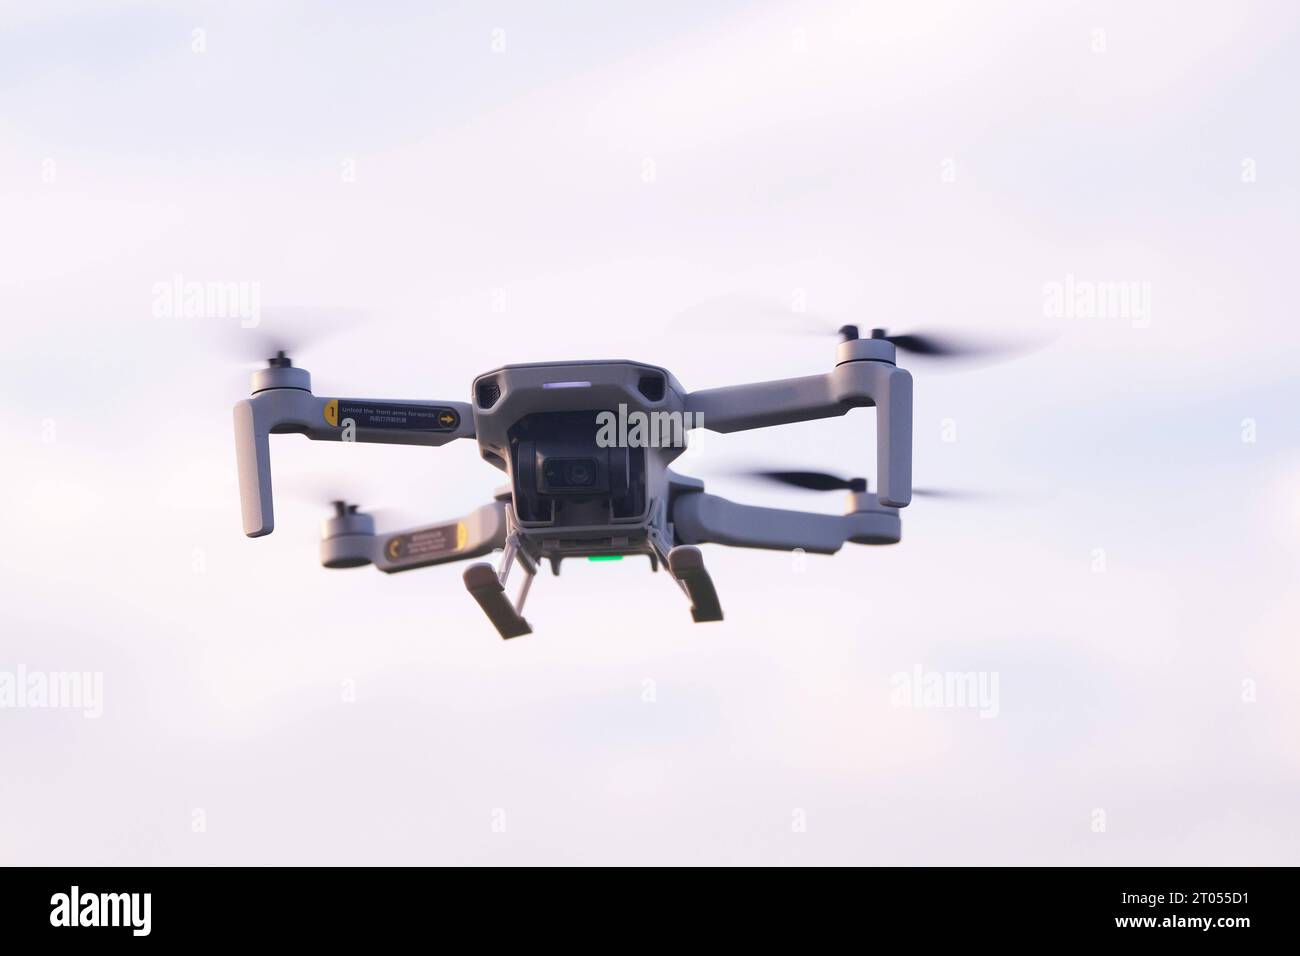 Drohnenverortnung-Quadrocopter,Drohne in Aktion Drohnenverordnung-Quadrocopter in Aktion *** Drone ordinance quadrocopter,drone in action drone ordinance quadrocopter in action Stock Photo